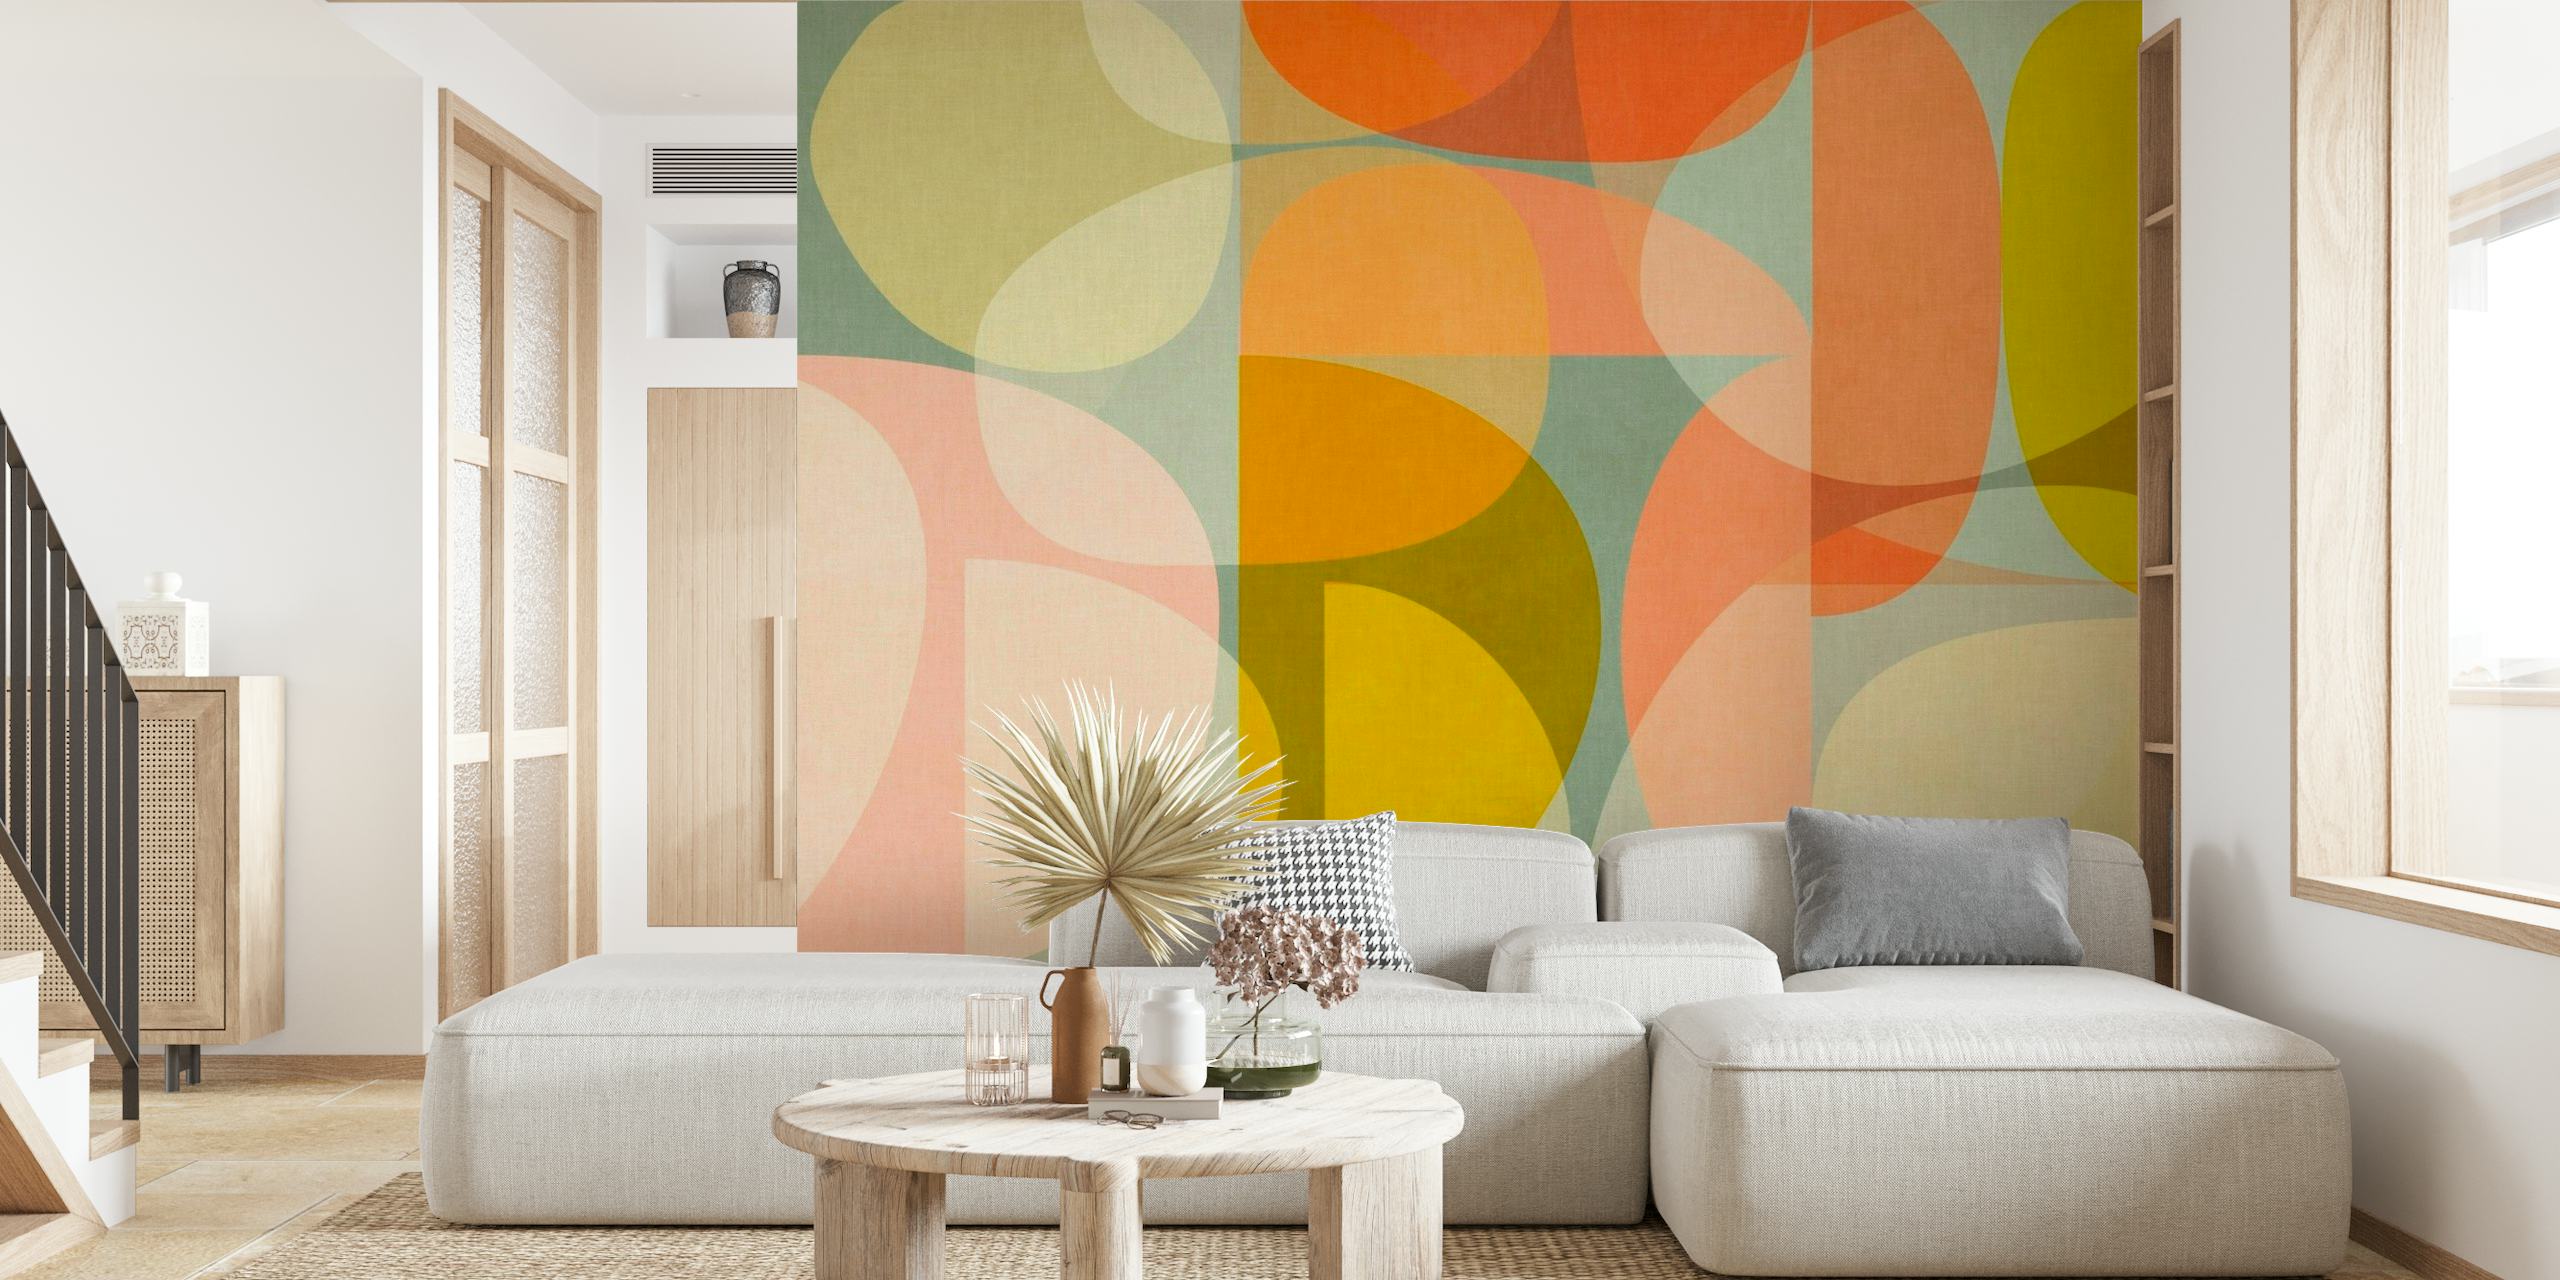 Abstrakt vægmaleri med halvcirkler i varme og neutrale toner